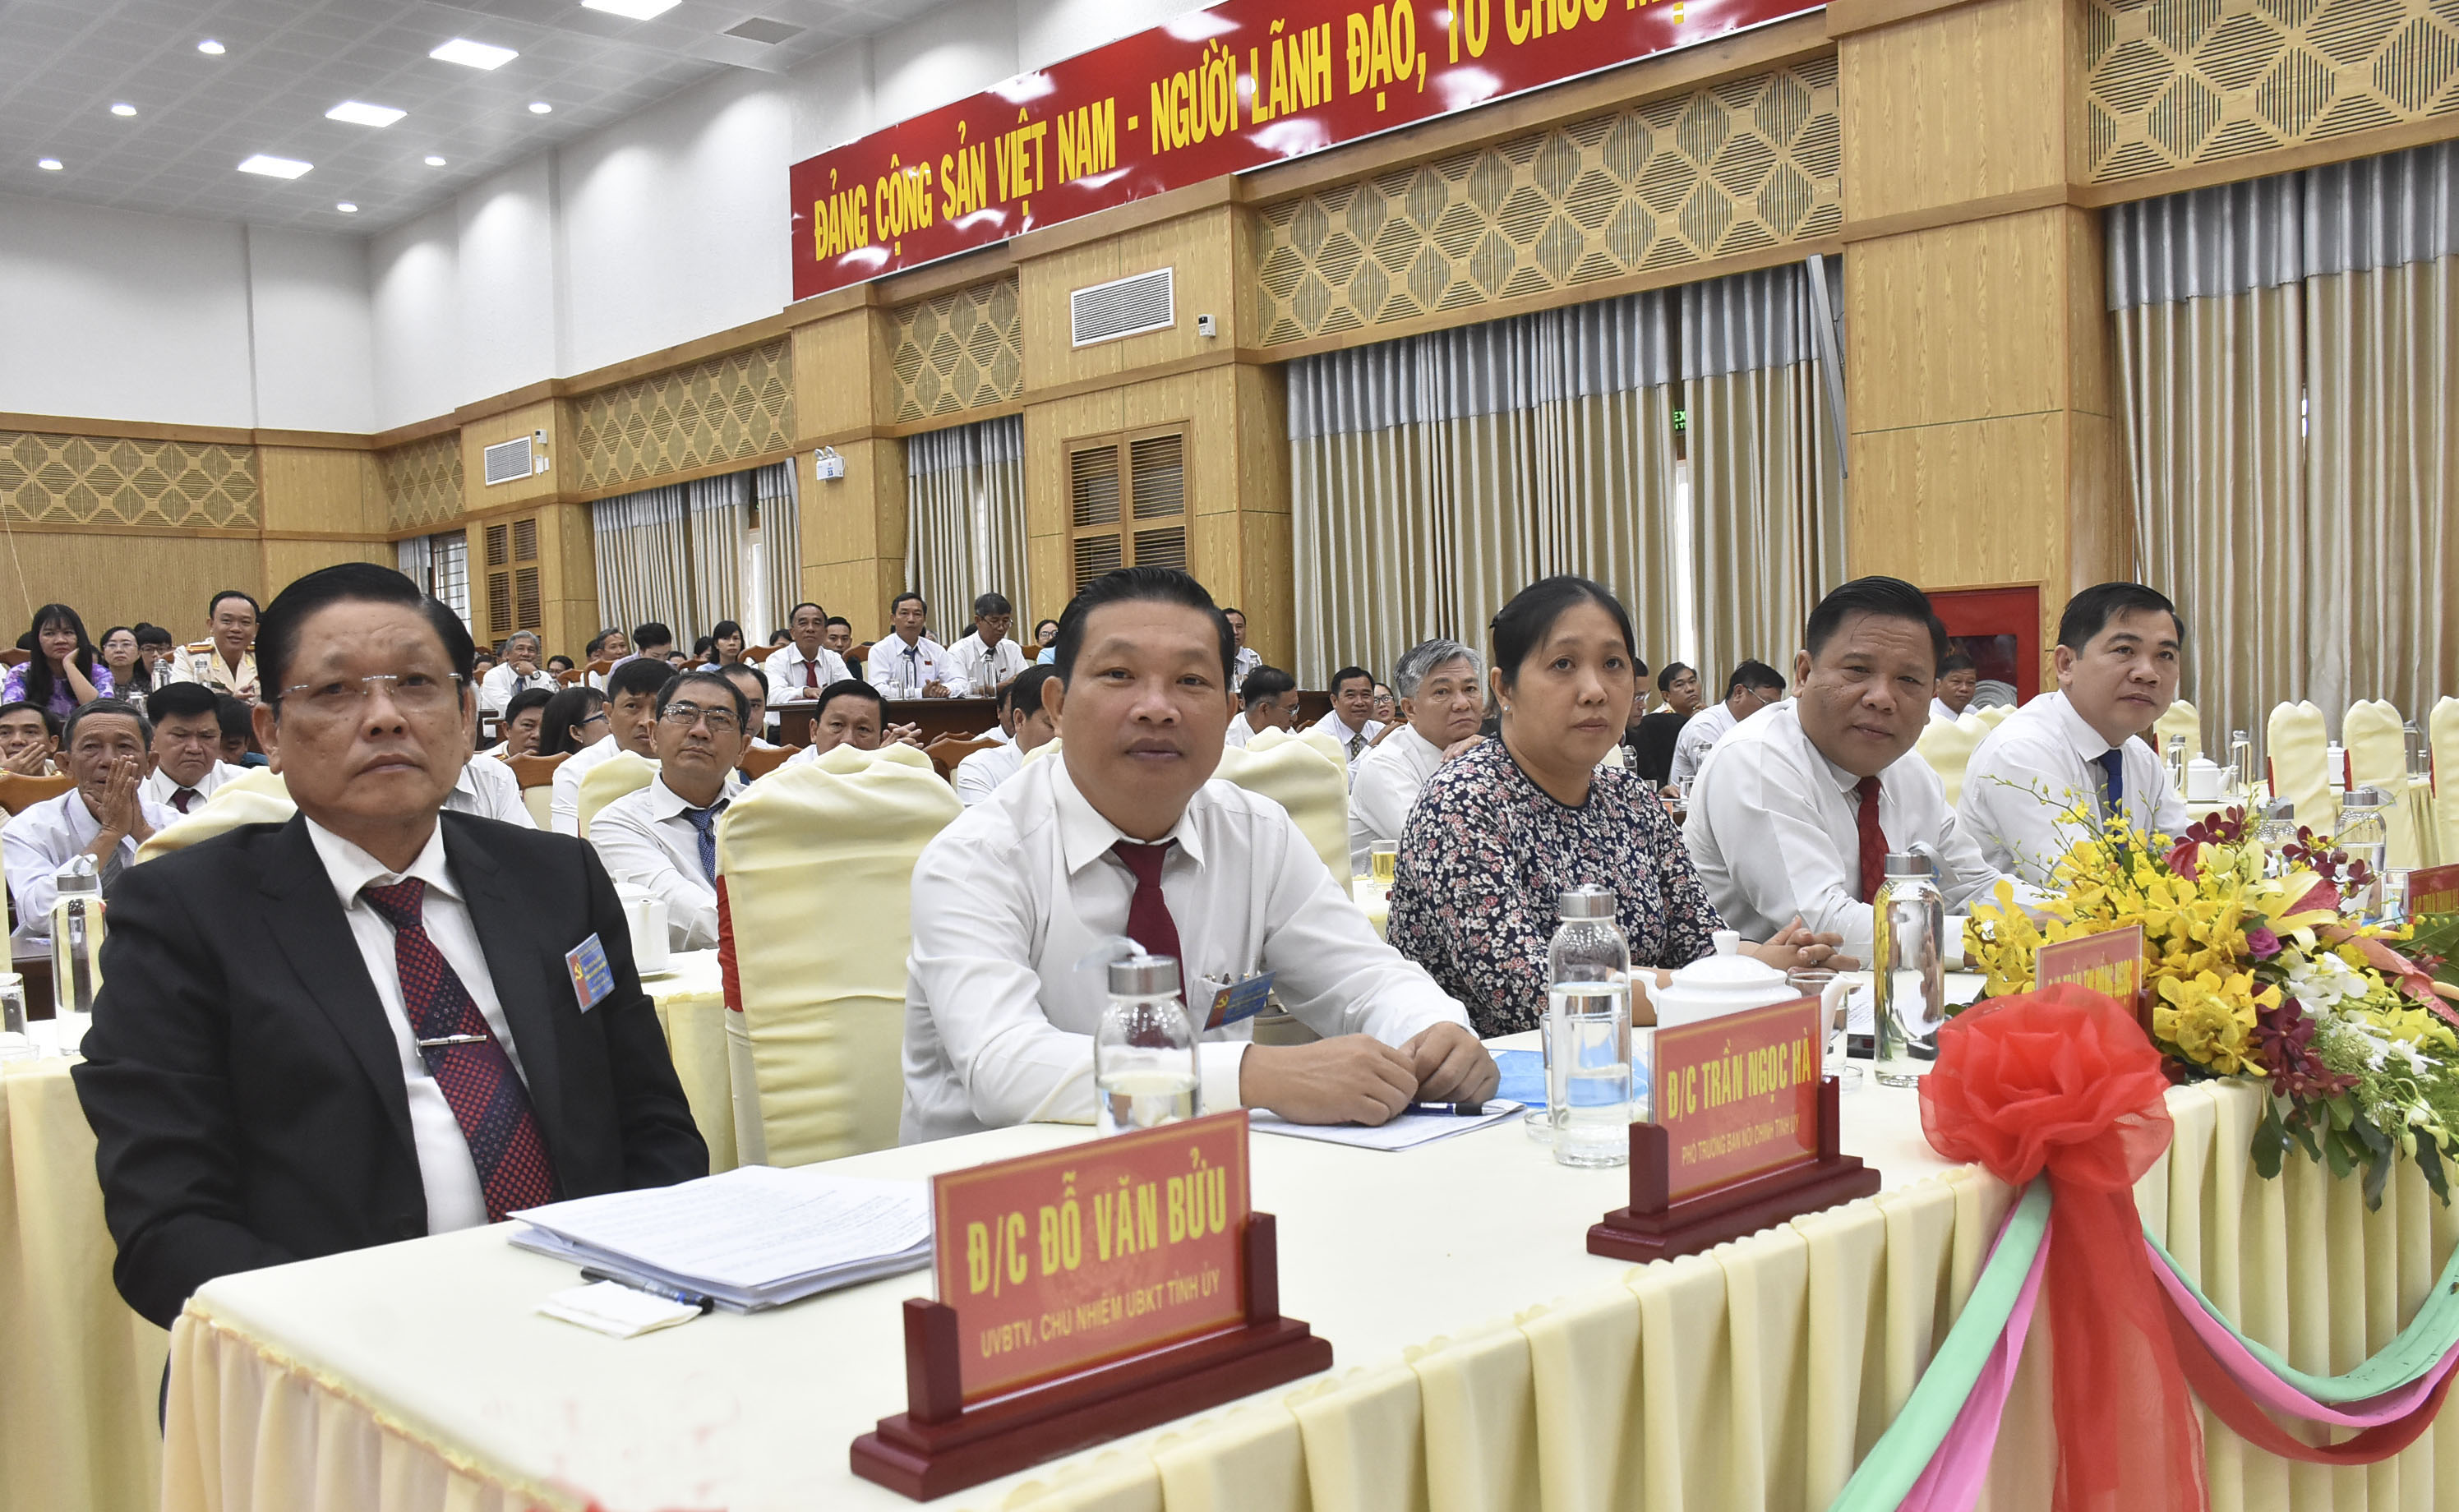 Đồng chí Đỗ Văn Bửu (bìa trái), Ủy viên Ban Thường vụ Tỉnh ủy, Chủ nhiệm Ủy ban Kiểm tra Tỉnh ủy dự phiên bế mạc Đại hội Đảng bộ huyện Long Điền lần thứ XII, nhiệm kỳ 2020-2025.